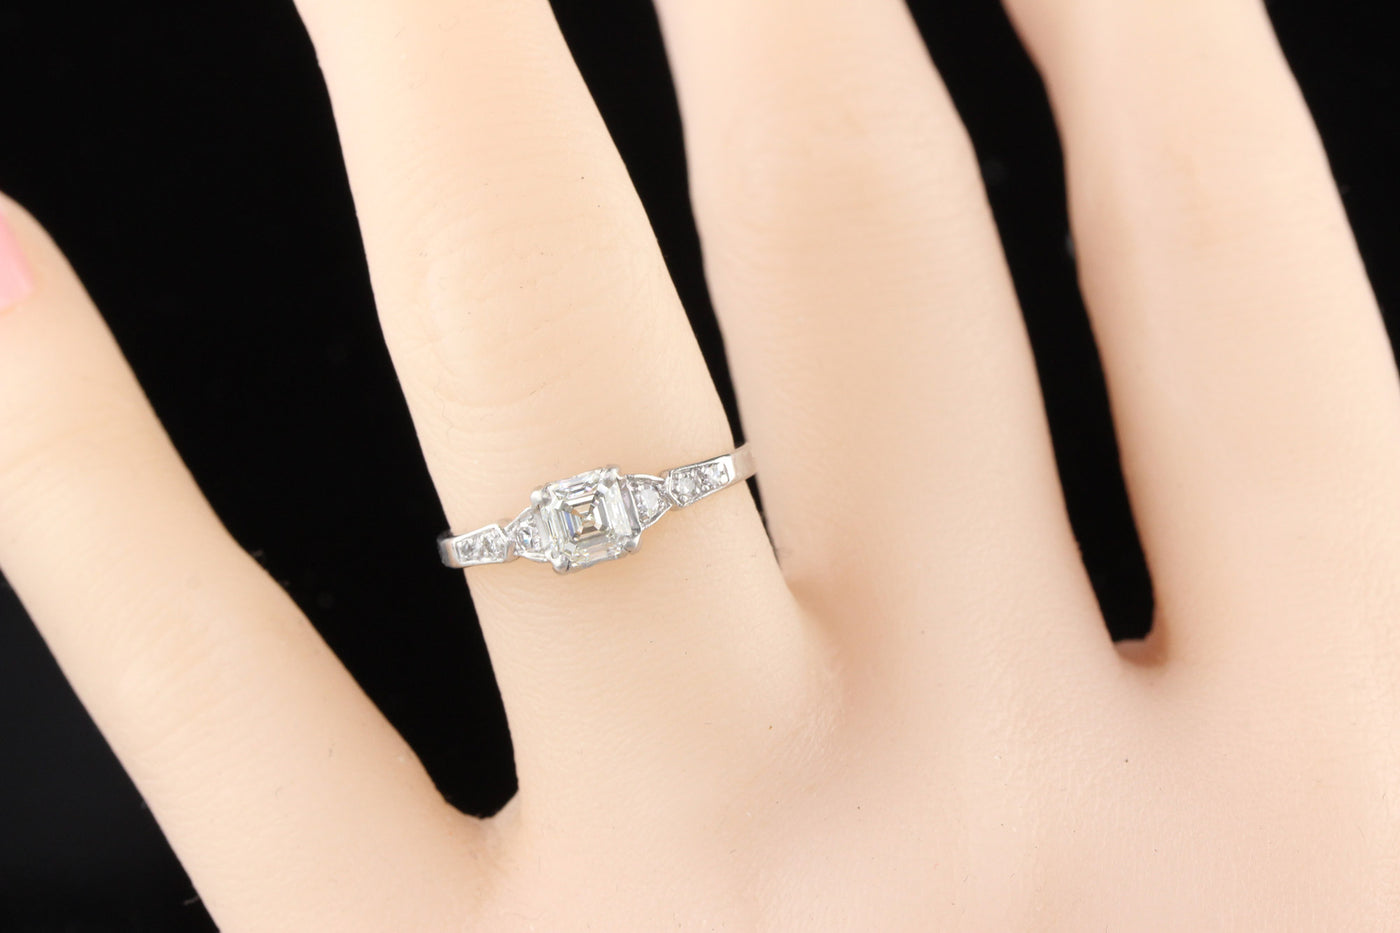 Antique Art Deco Platinum Asscher Cut Diamond Engagement Ring - The Antique Parlour